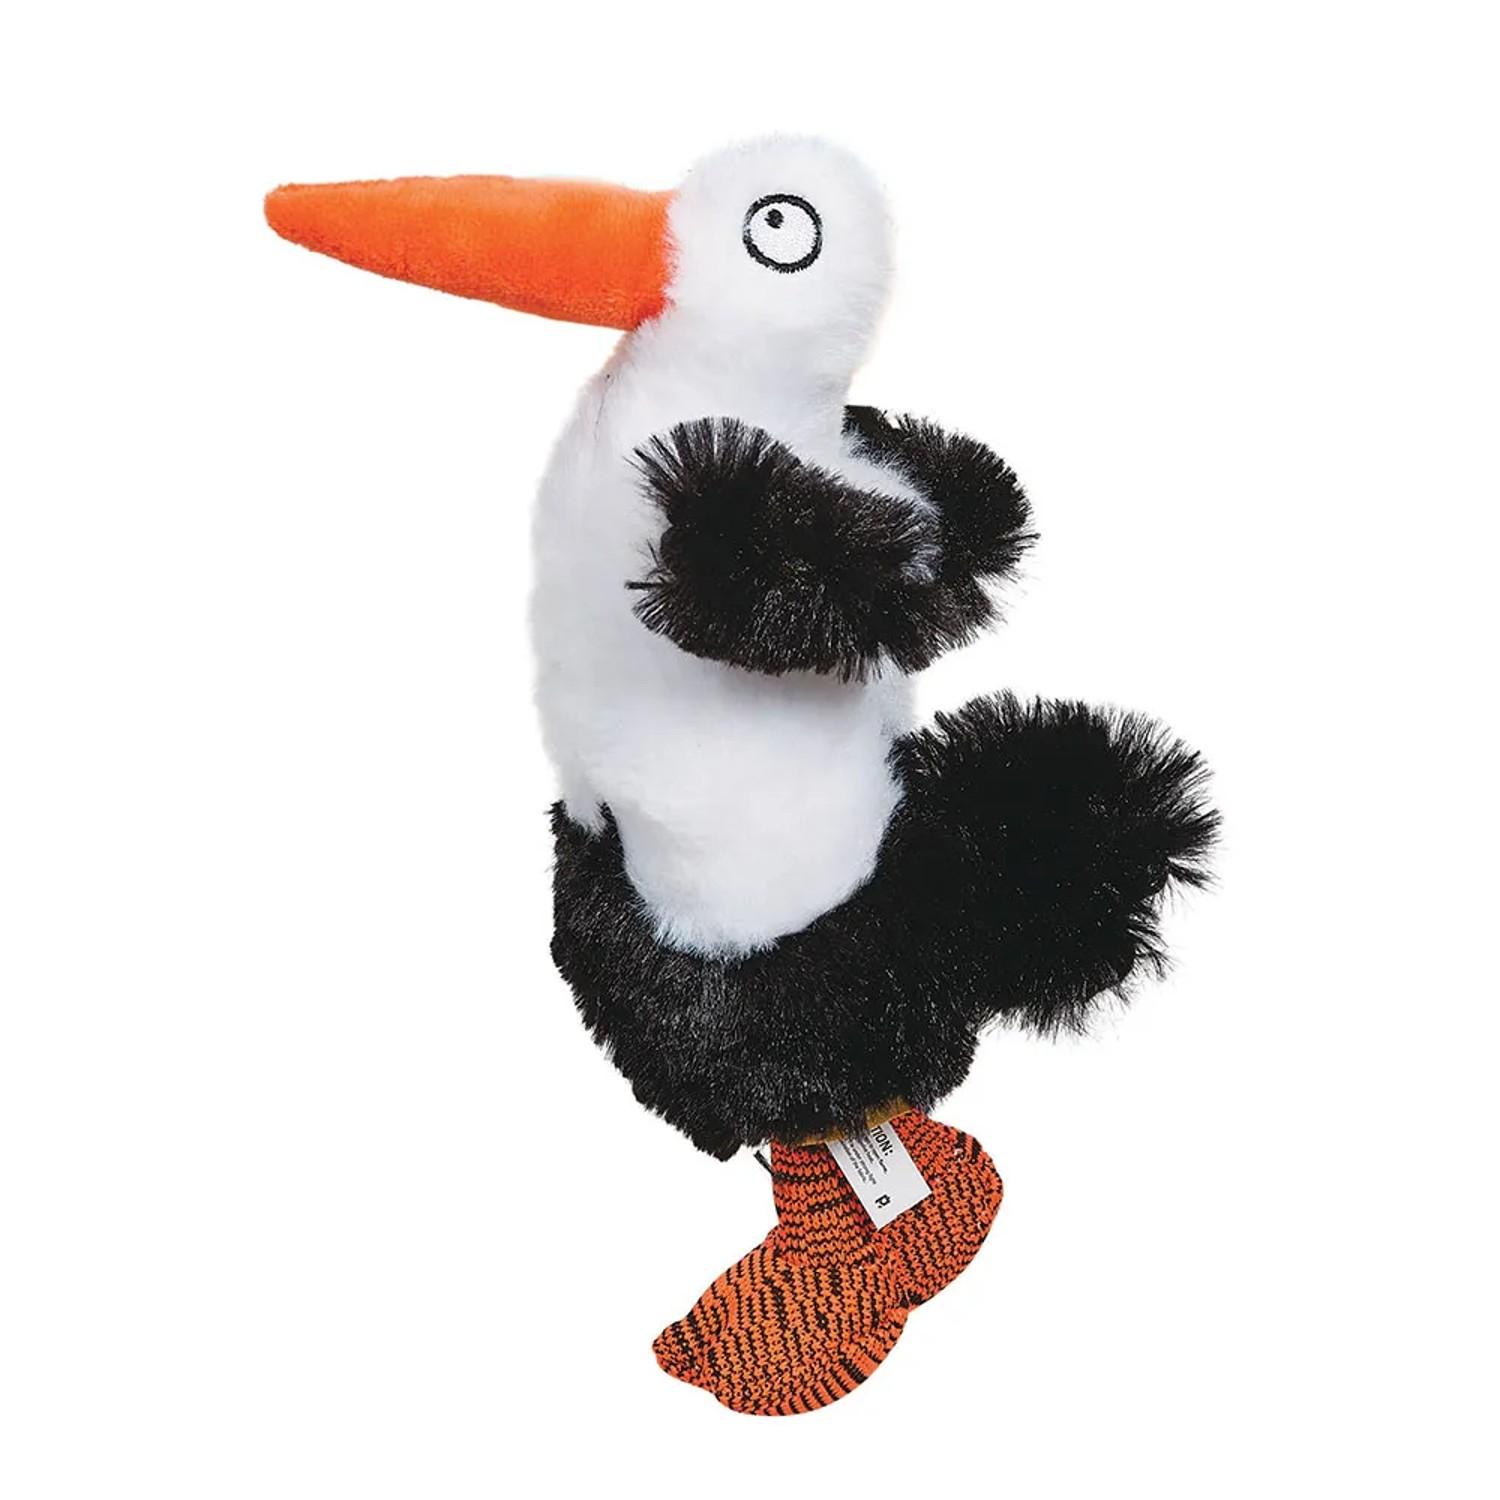 Zanies Silly Stork Dog Toy - Tall